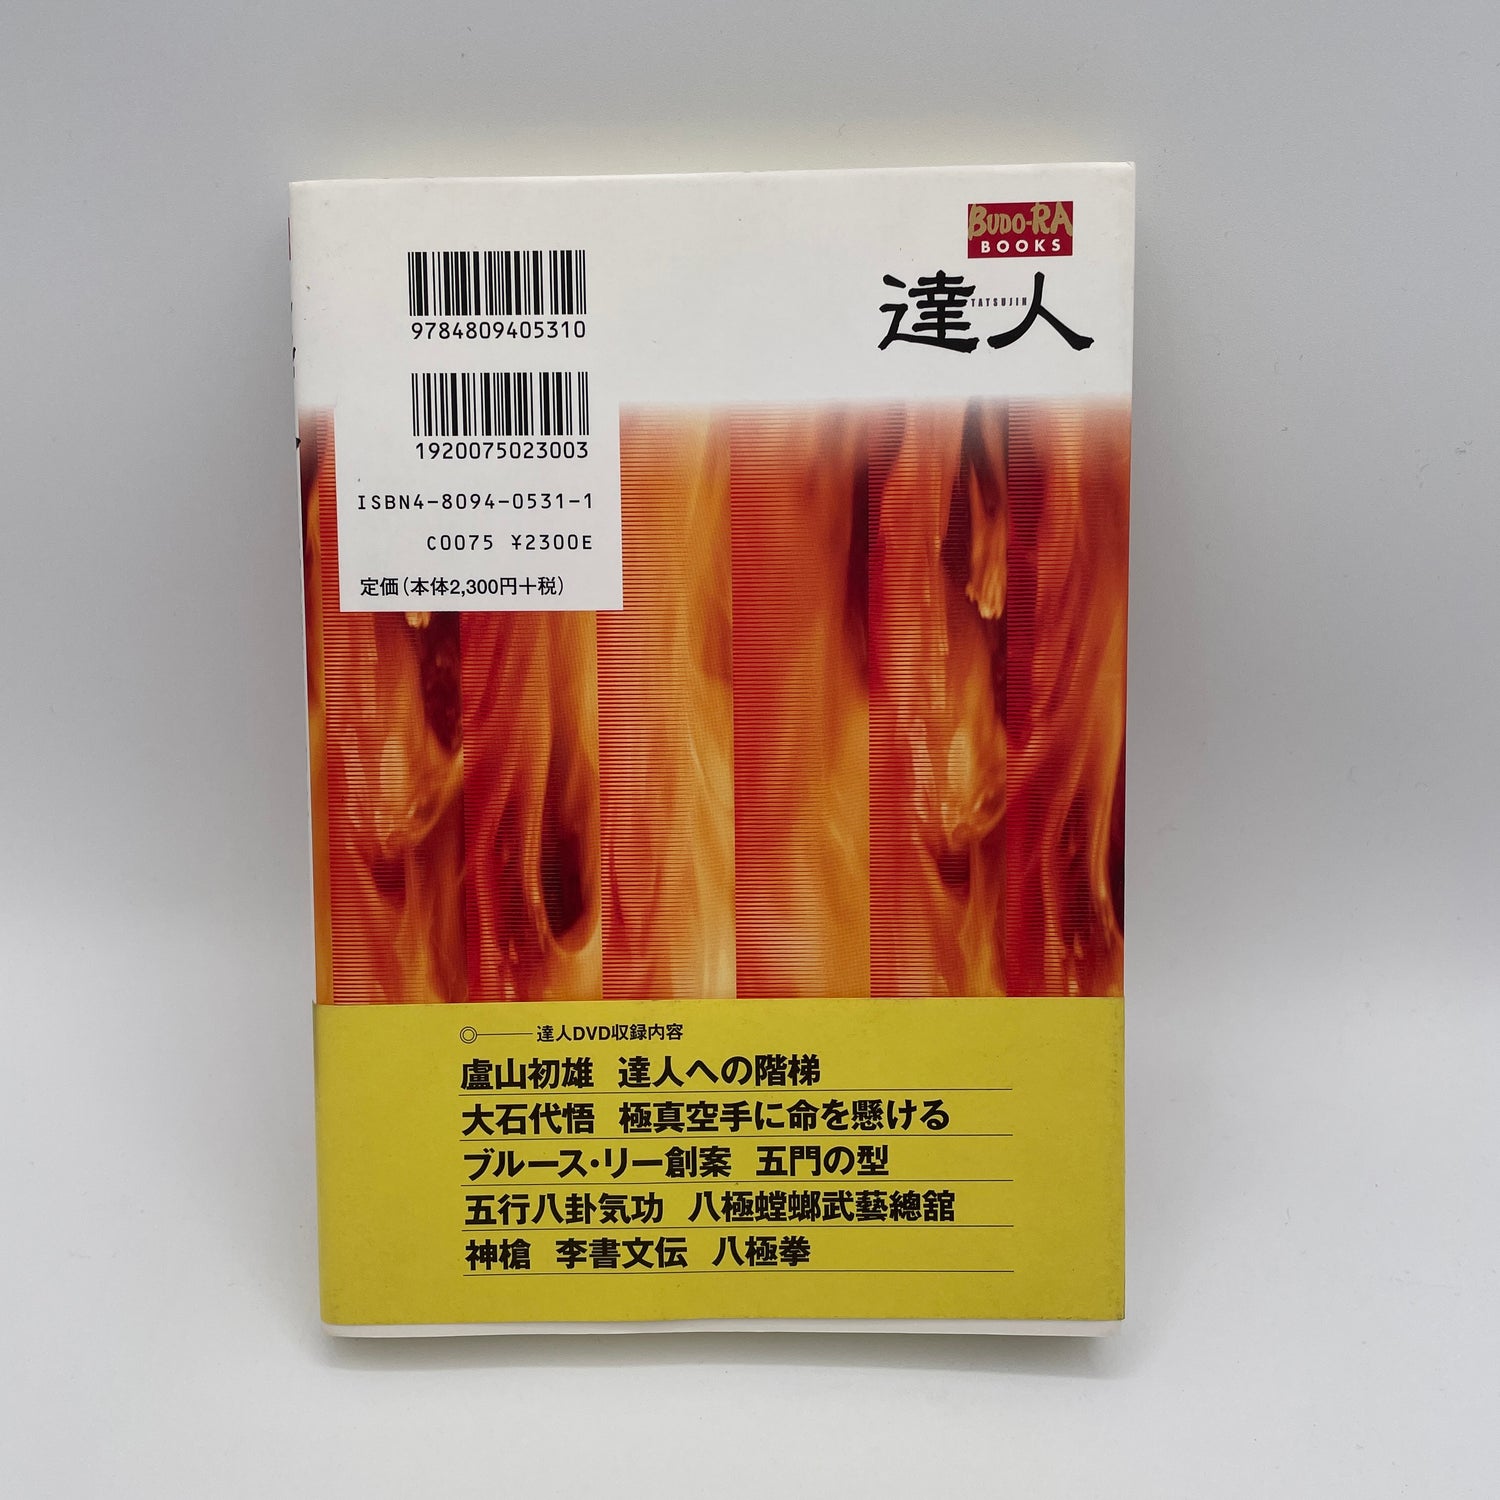 Tatsujin Vol 1: Para aquellos que buscan los secretos de las artes marciales Libro y DVD (usado)